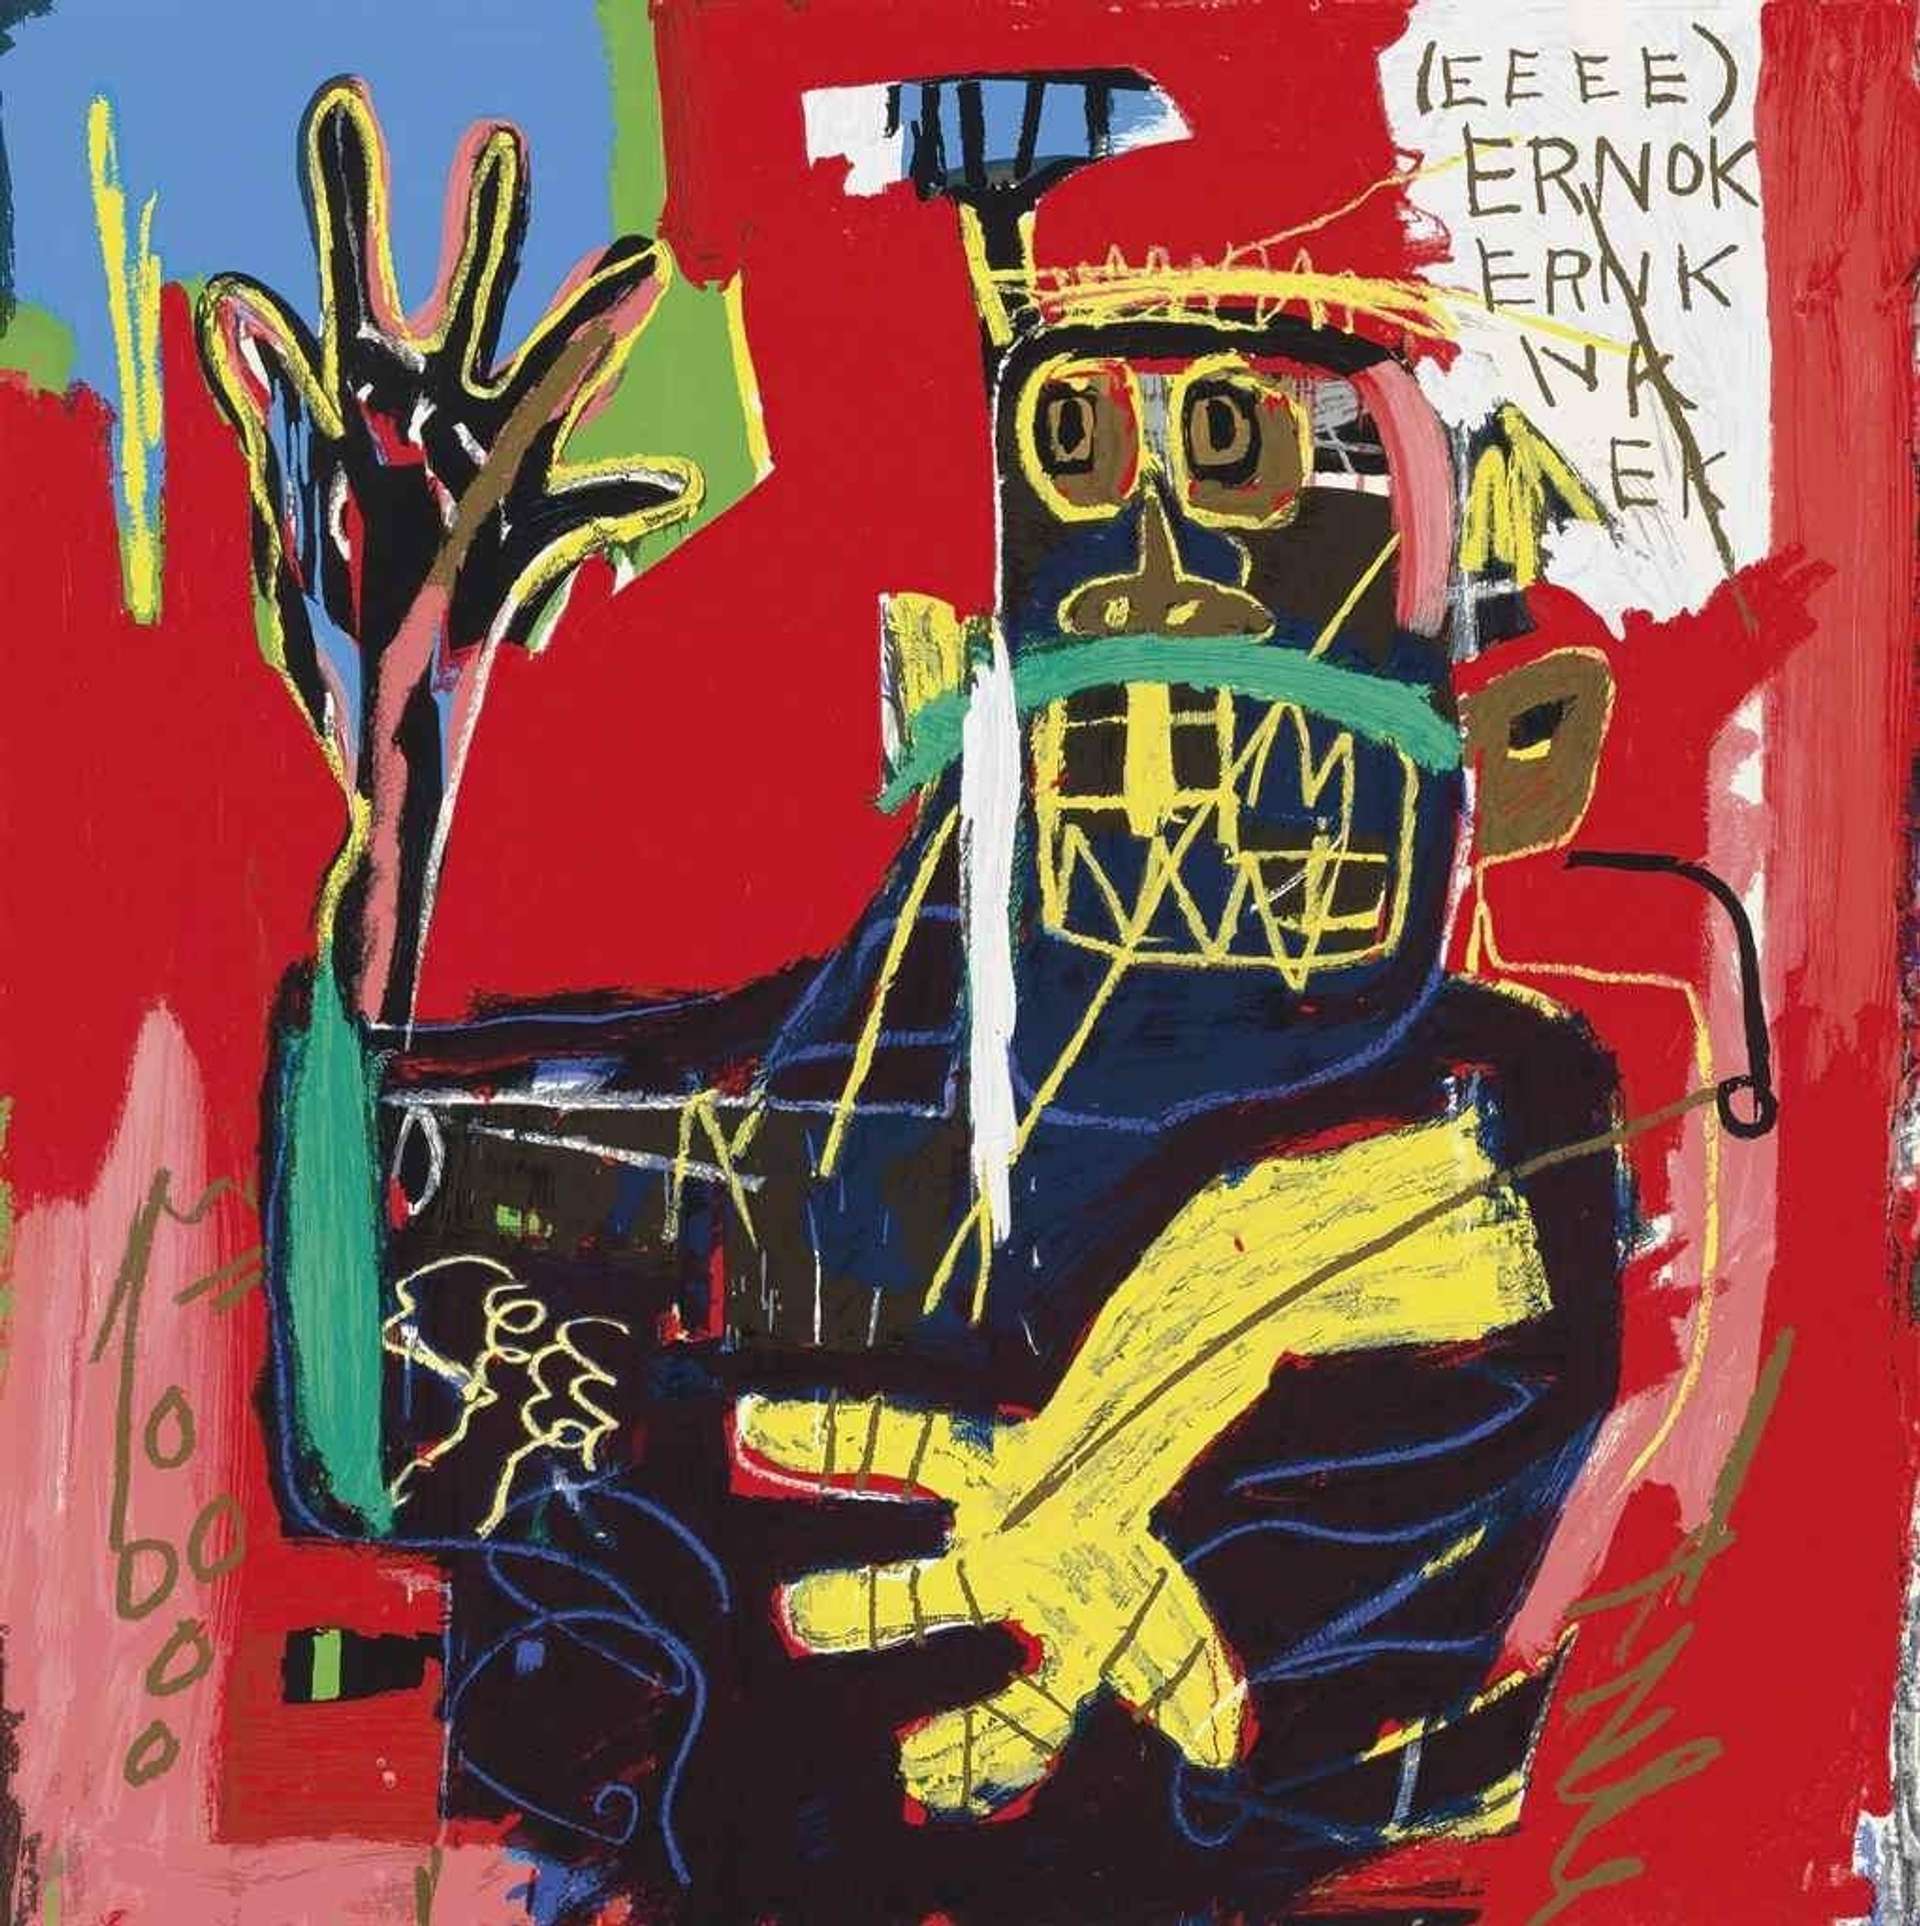 Ernok by Jean-Michel Basquiat